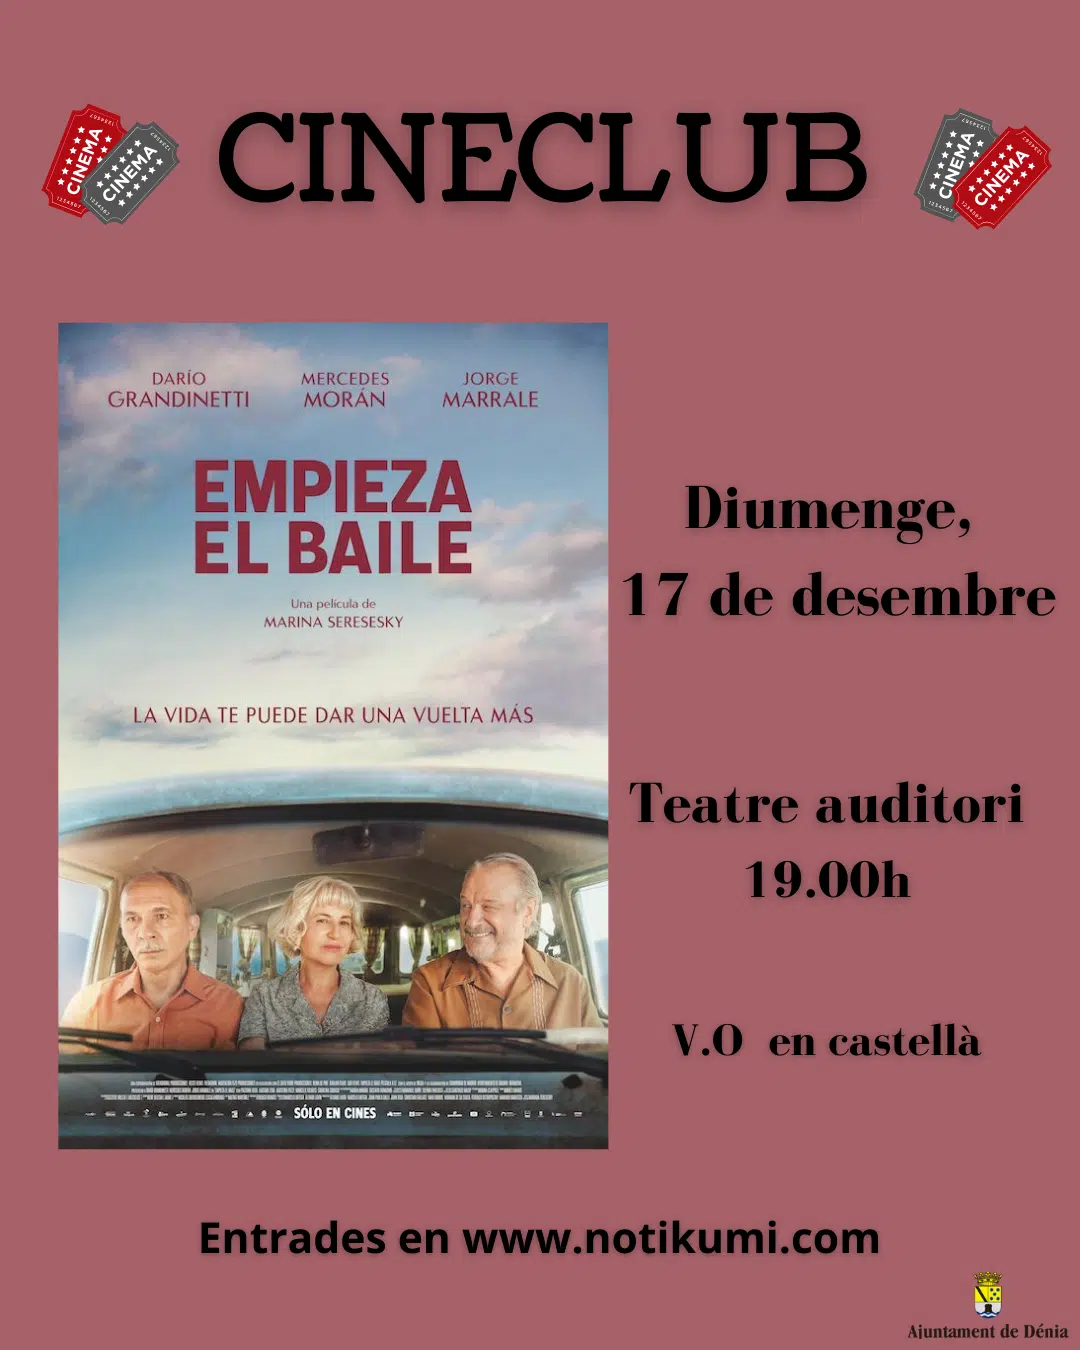 Cineclub: EMPIEZA EL BAILE